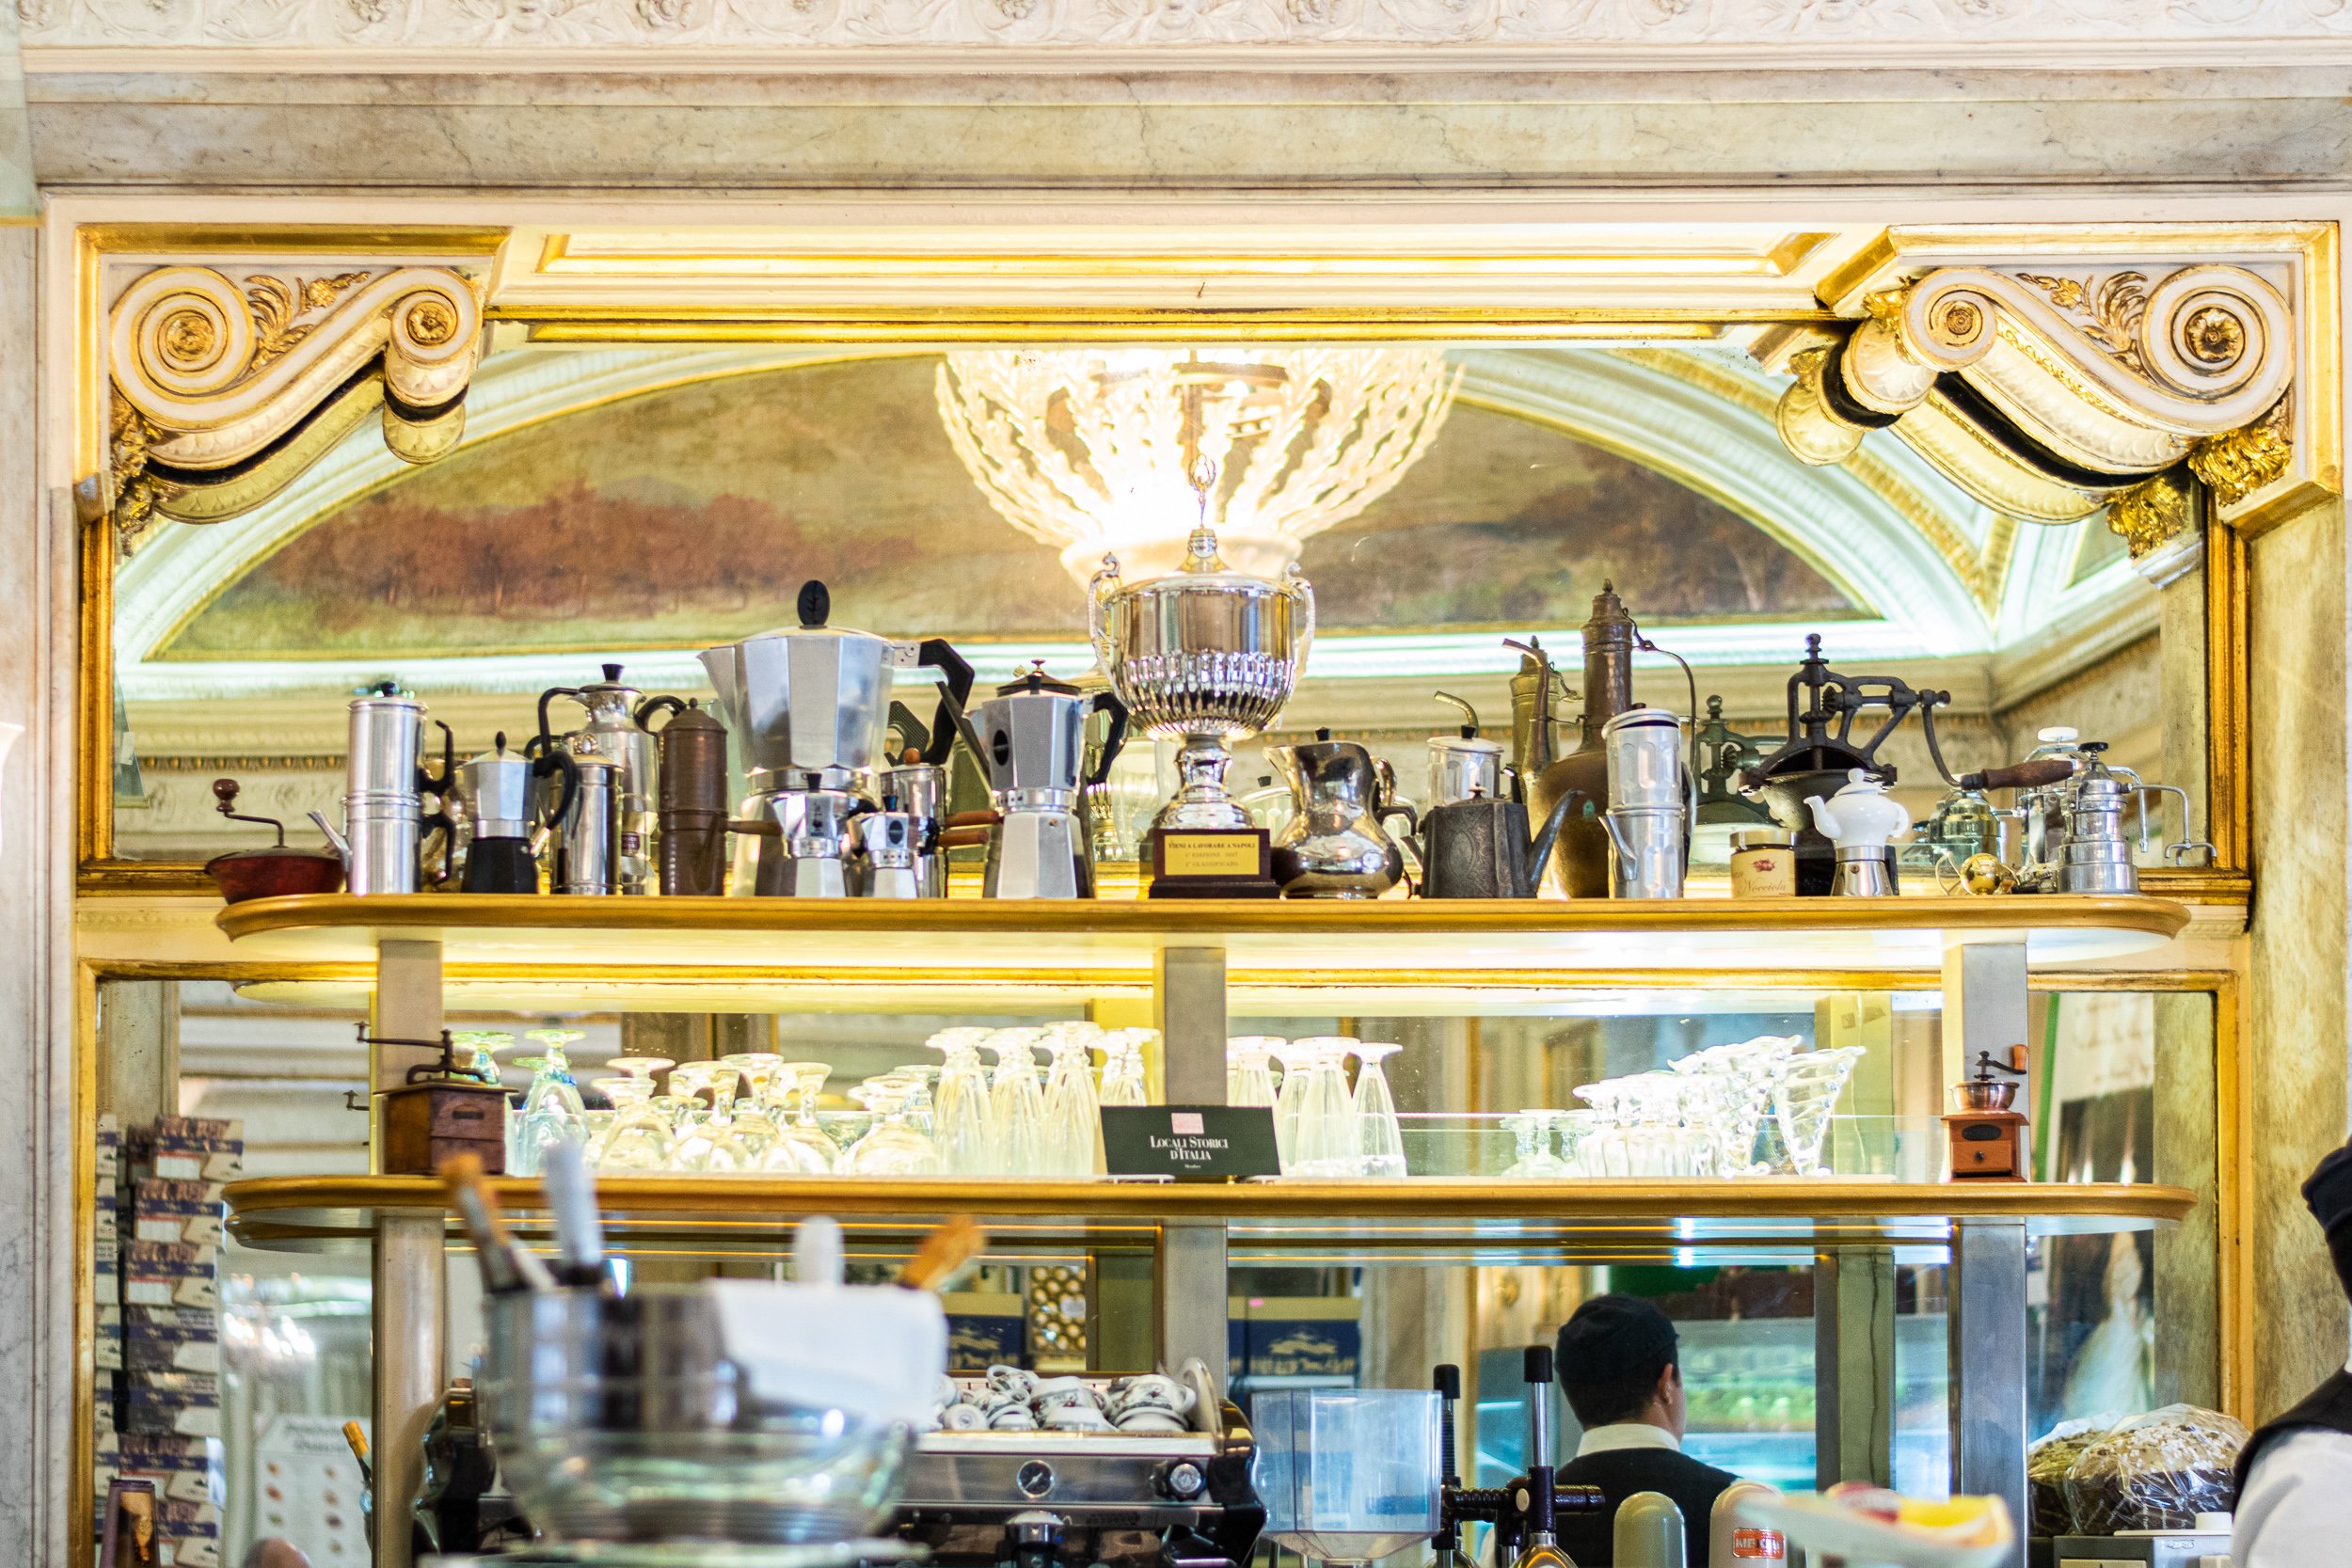 coffee bars in italy - Beautiful Mirror